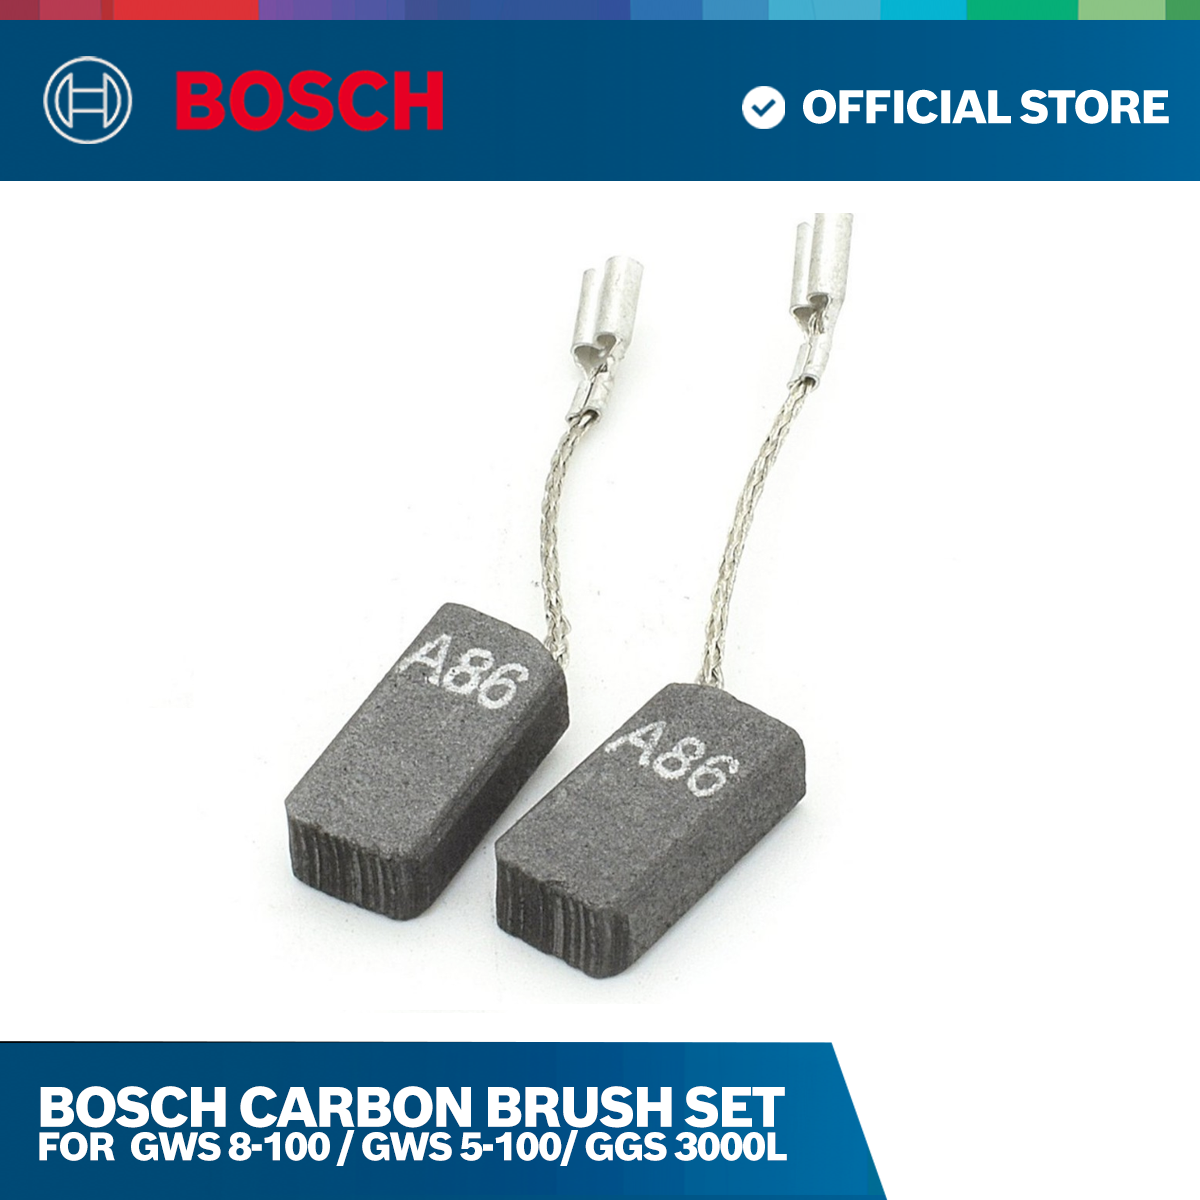 Bosch Carbon Brush Set for GWS 8-100 / GWS 5-100/ GGS 3000L